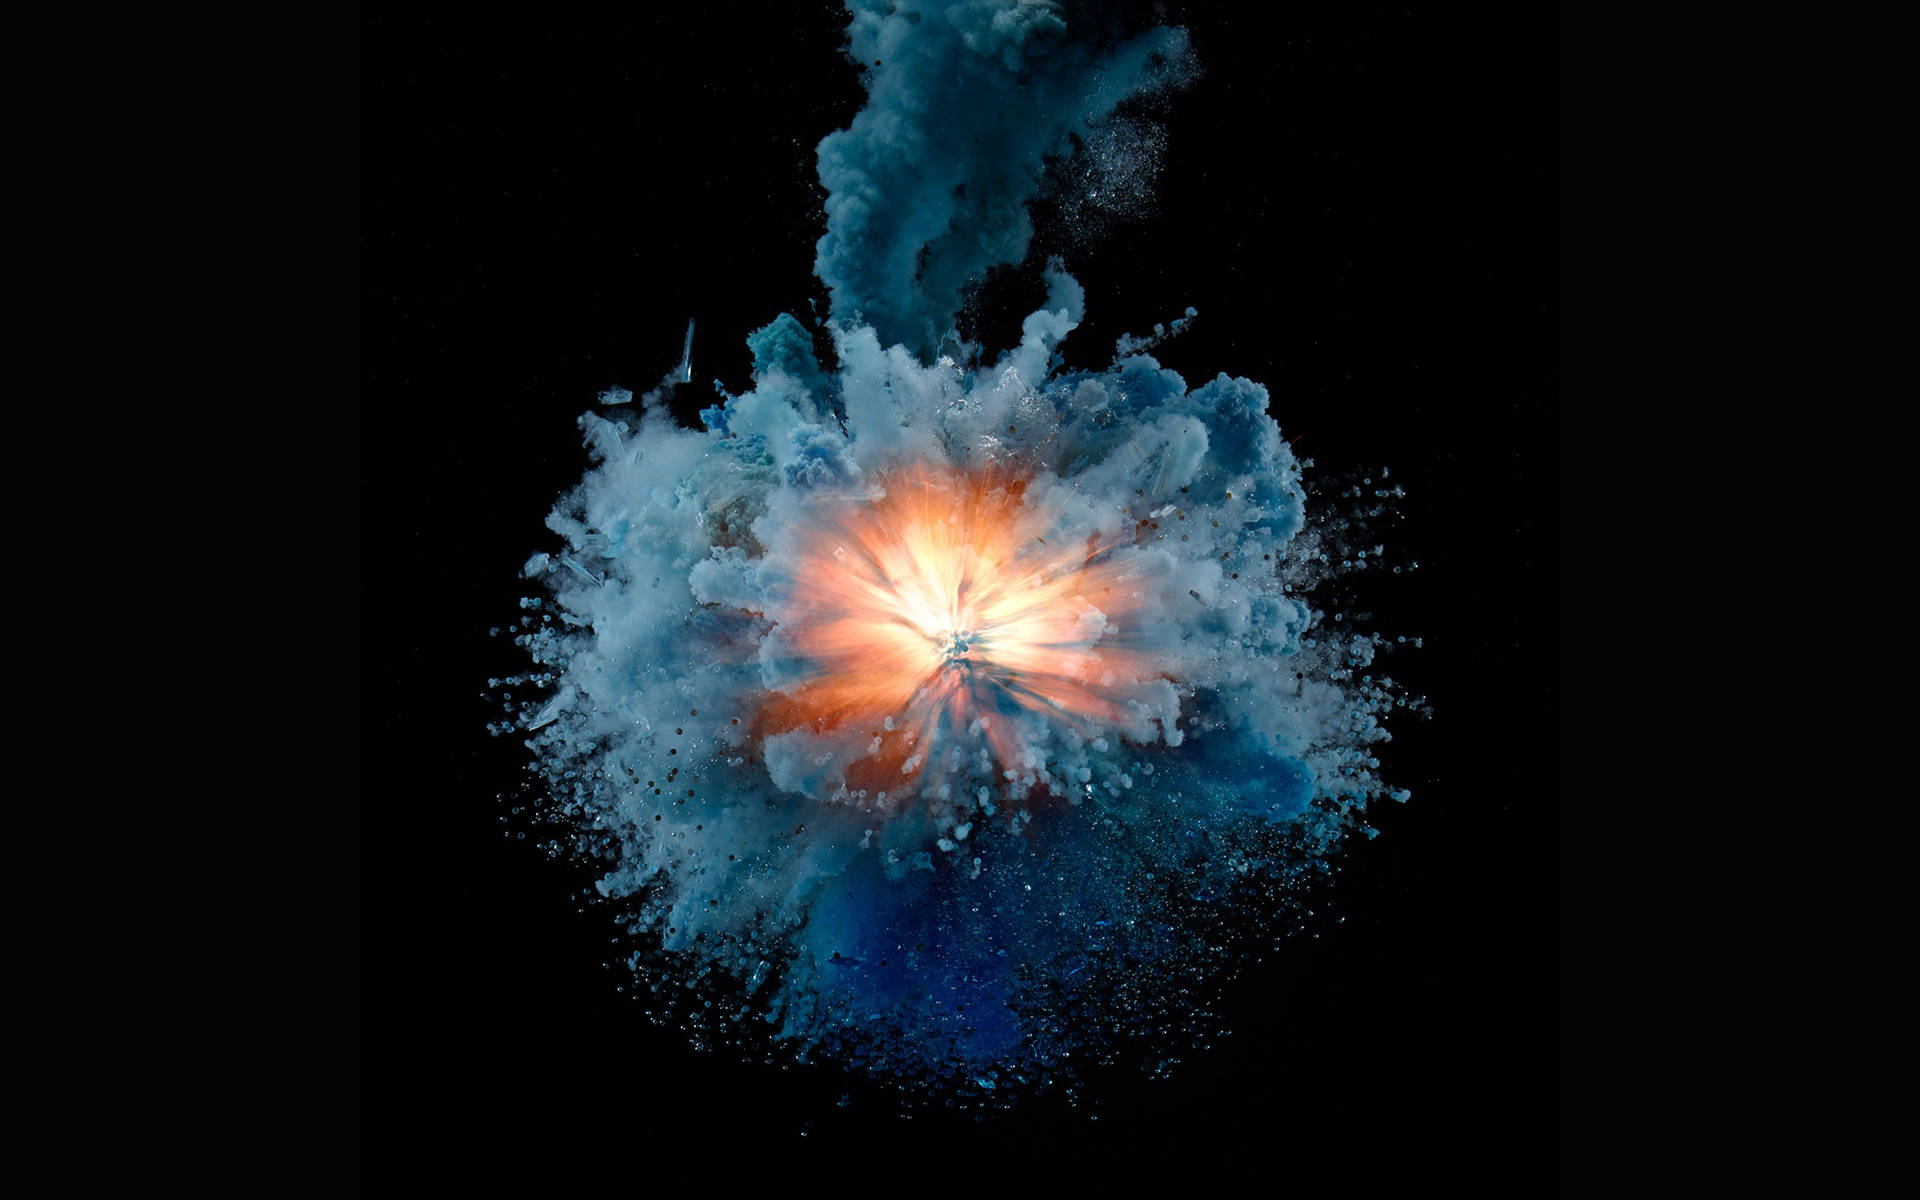 MacBook Pro Explosion Art Wallpaper